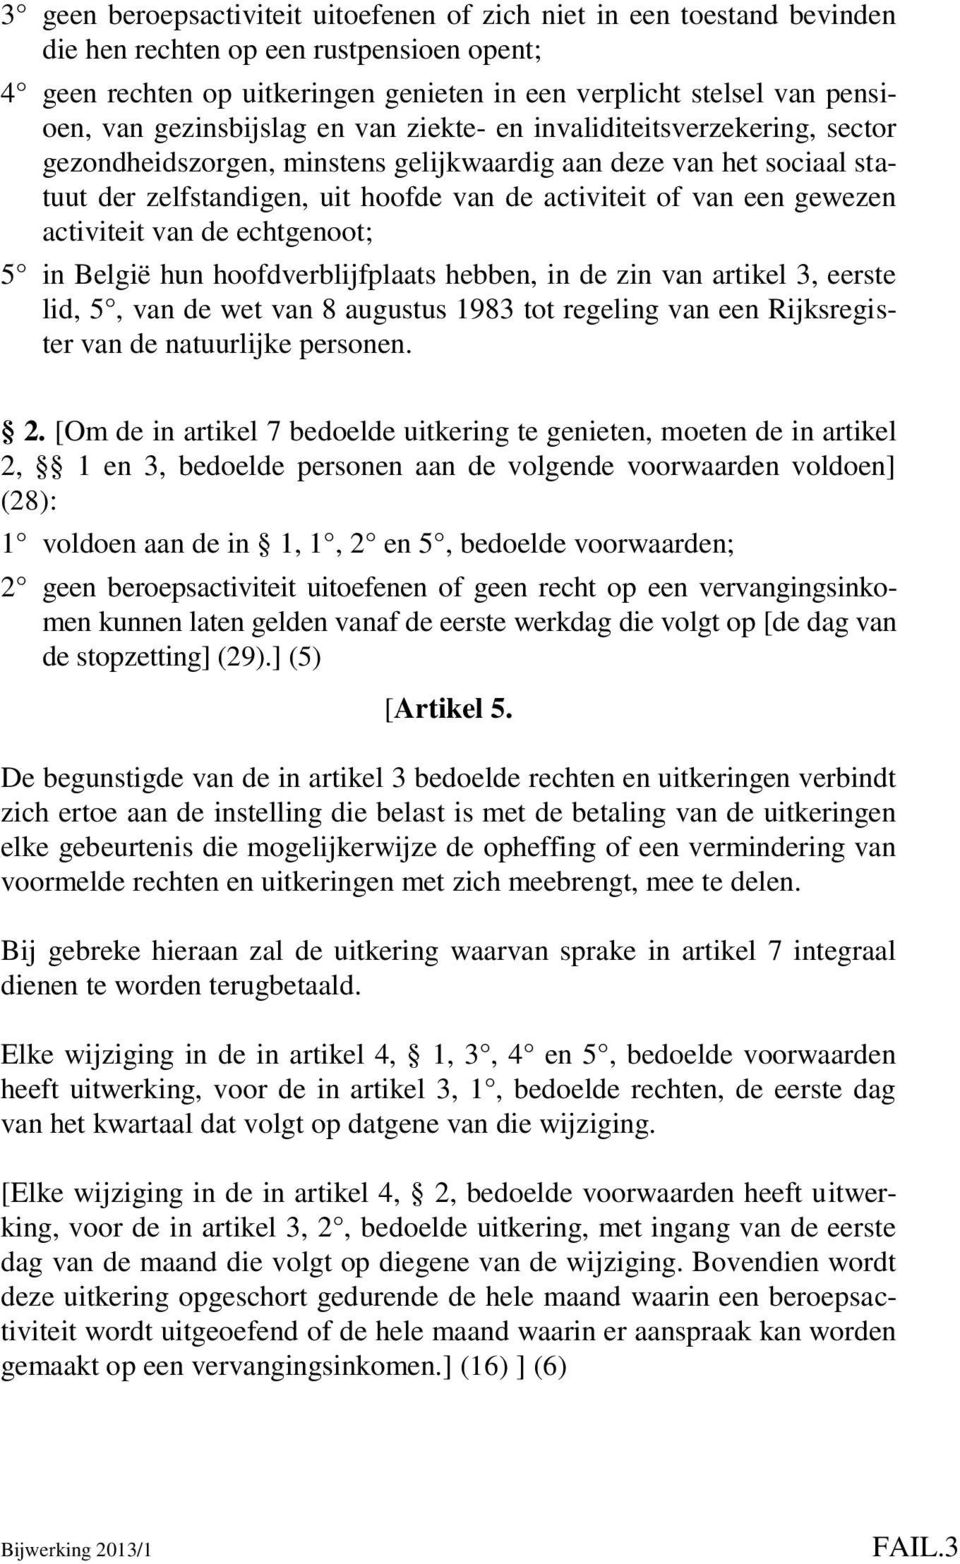 gewezen activiteit van de echtgenoot; 5 in België hun hoofdverblijfplaats hebben, in de zin van artikel 3, eerste lid, 5, van de wet van 8 augustus 1983 tot regeling van een Rijksregister van de